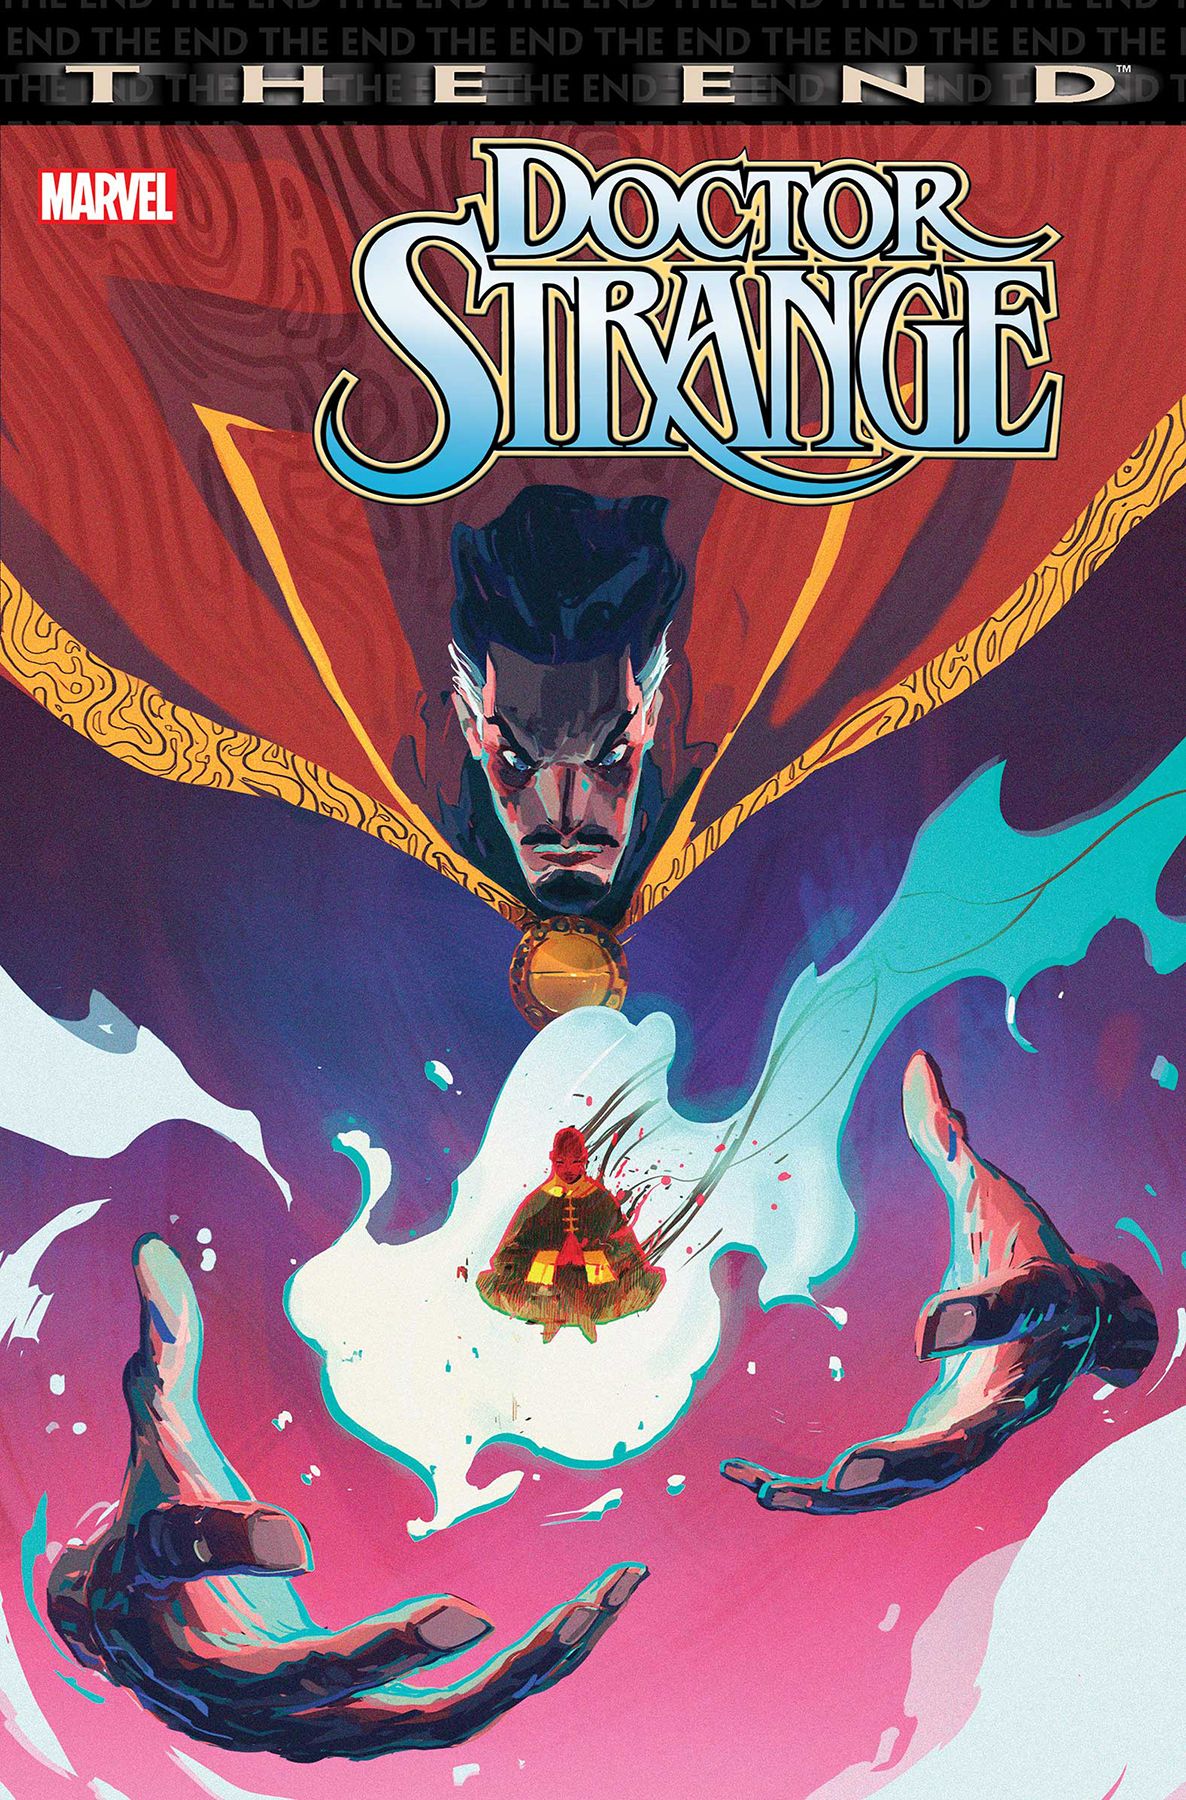 Doctor Strange: End Comic